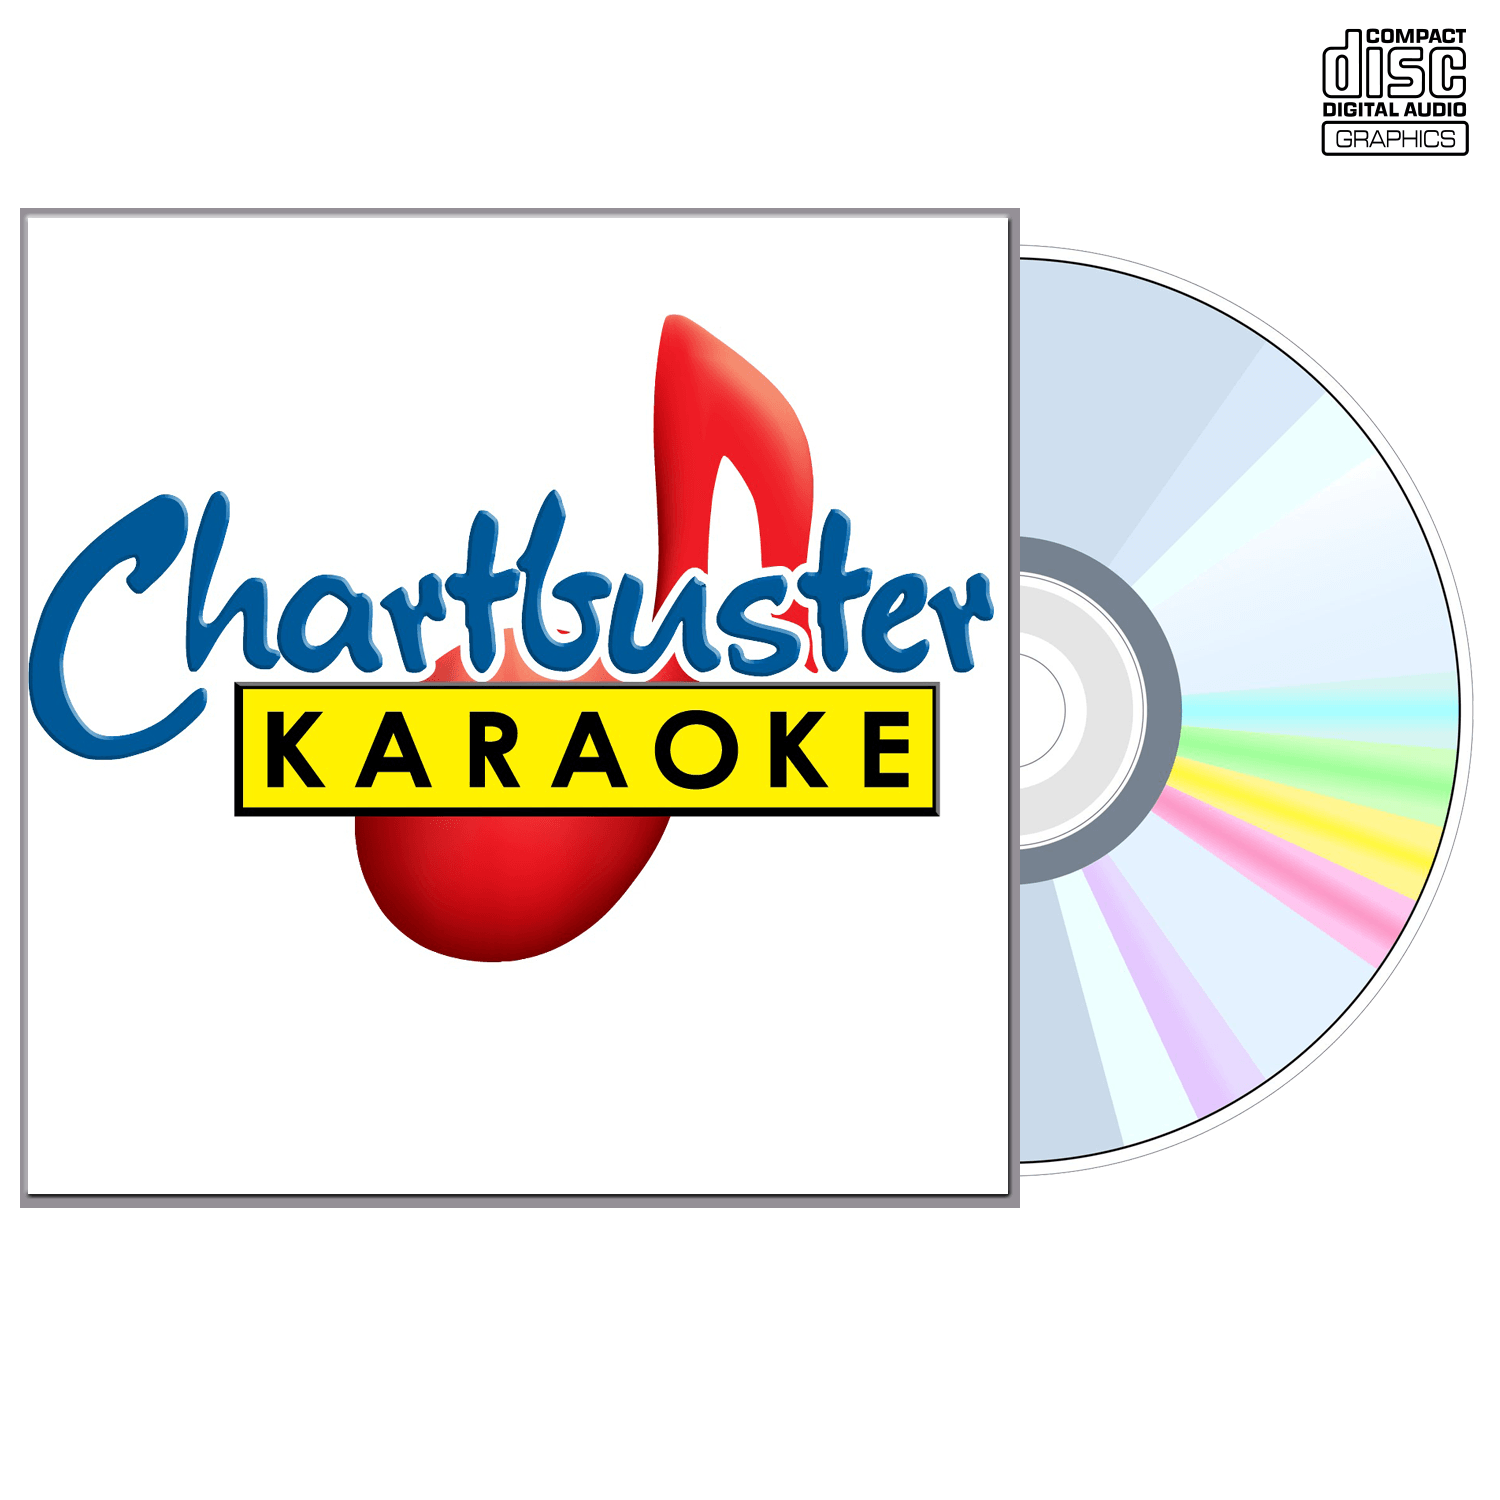 Elton John And Ladies - CD+G - Chartbuster Karaoke - Karaoke Home Entertainment